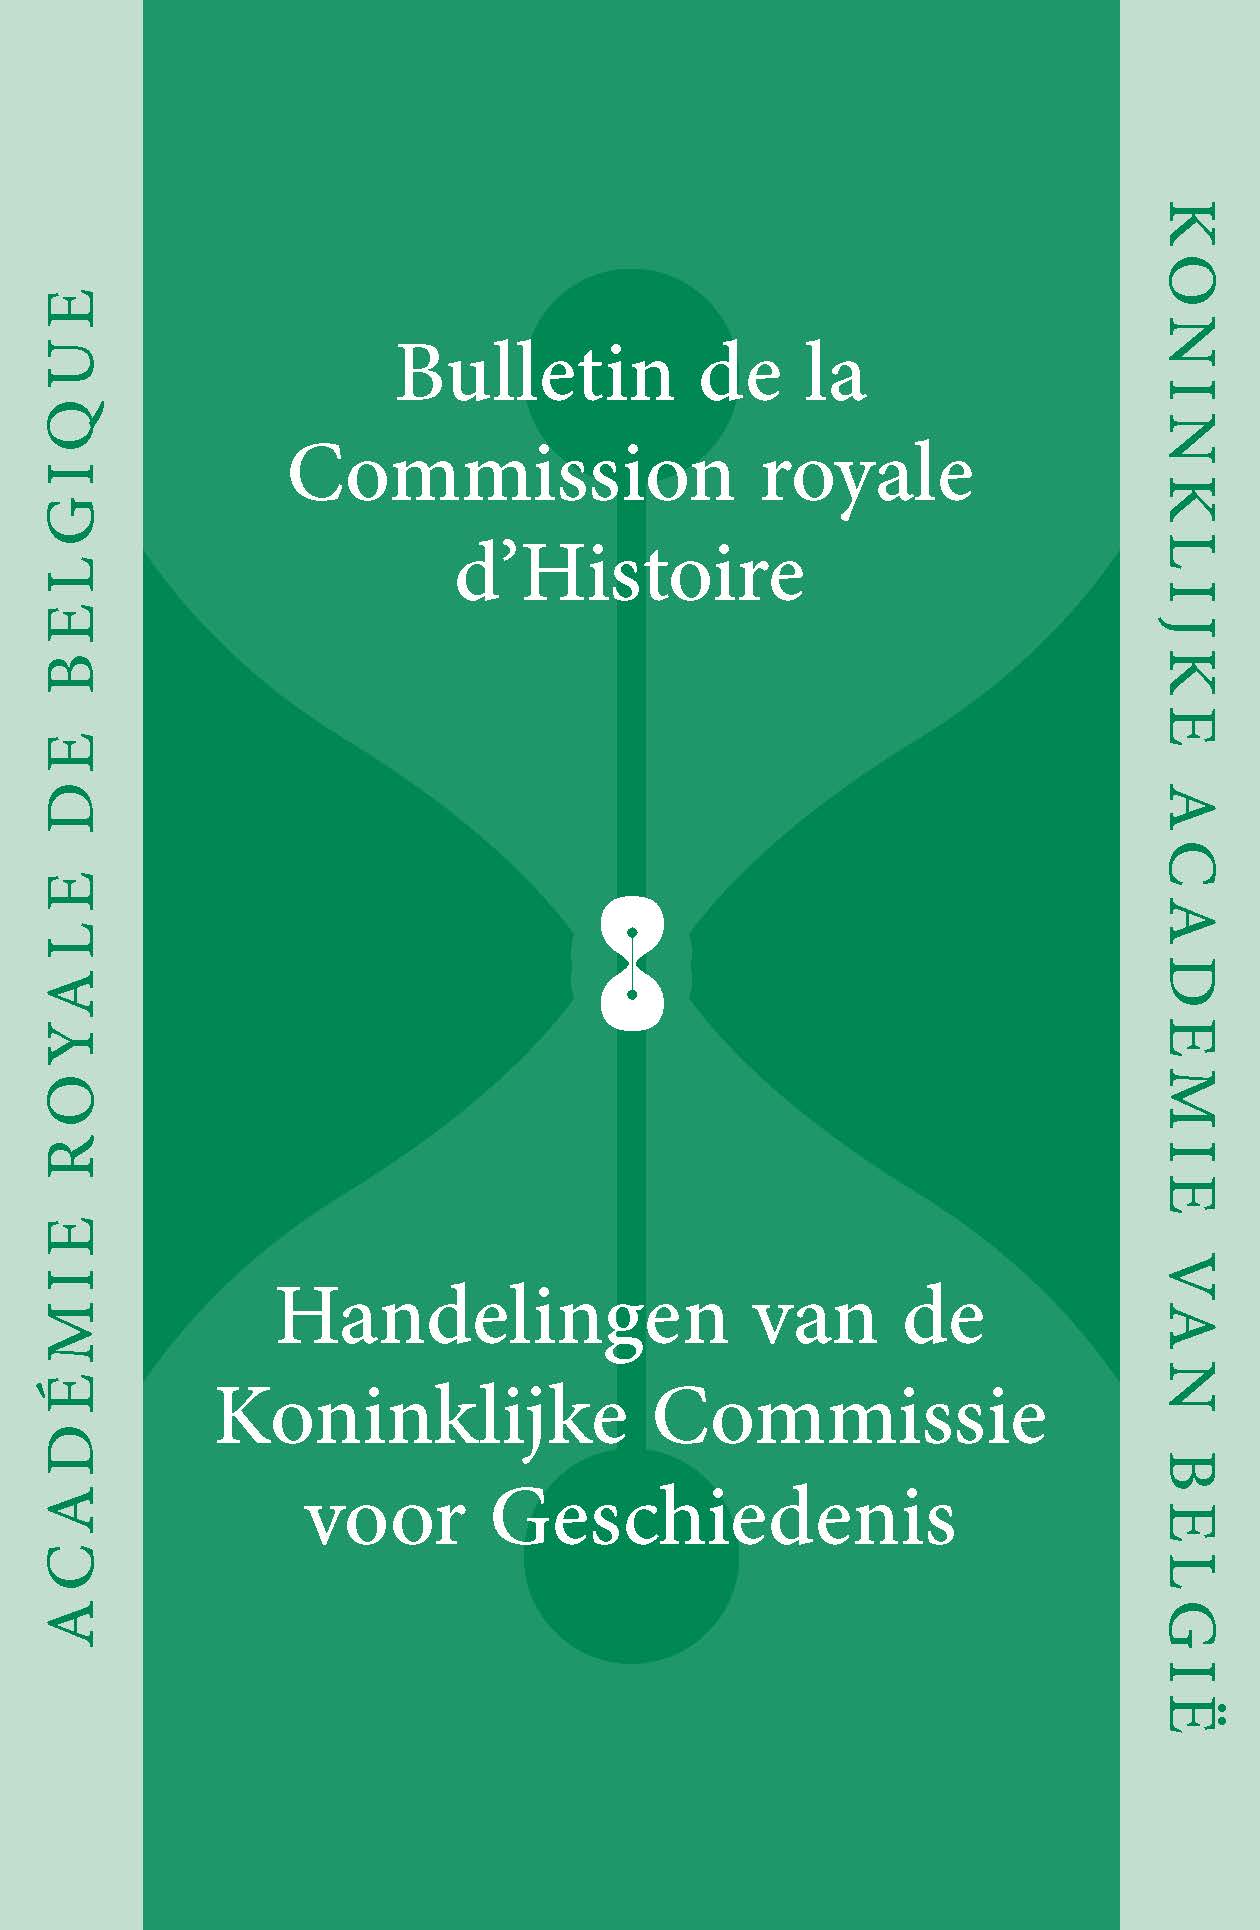 HANDELINGEN VAN DE KONINKLIJKE COMMISSIE VOOR GESCHIEDENIS/BULLETIN, VOL. 184, 2018 (kcg)